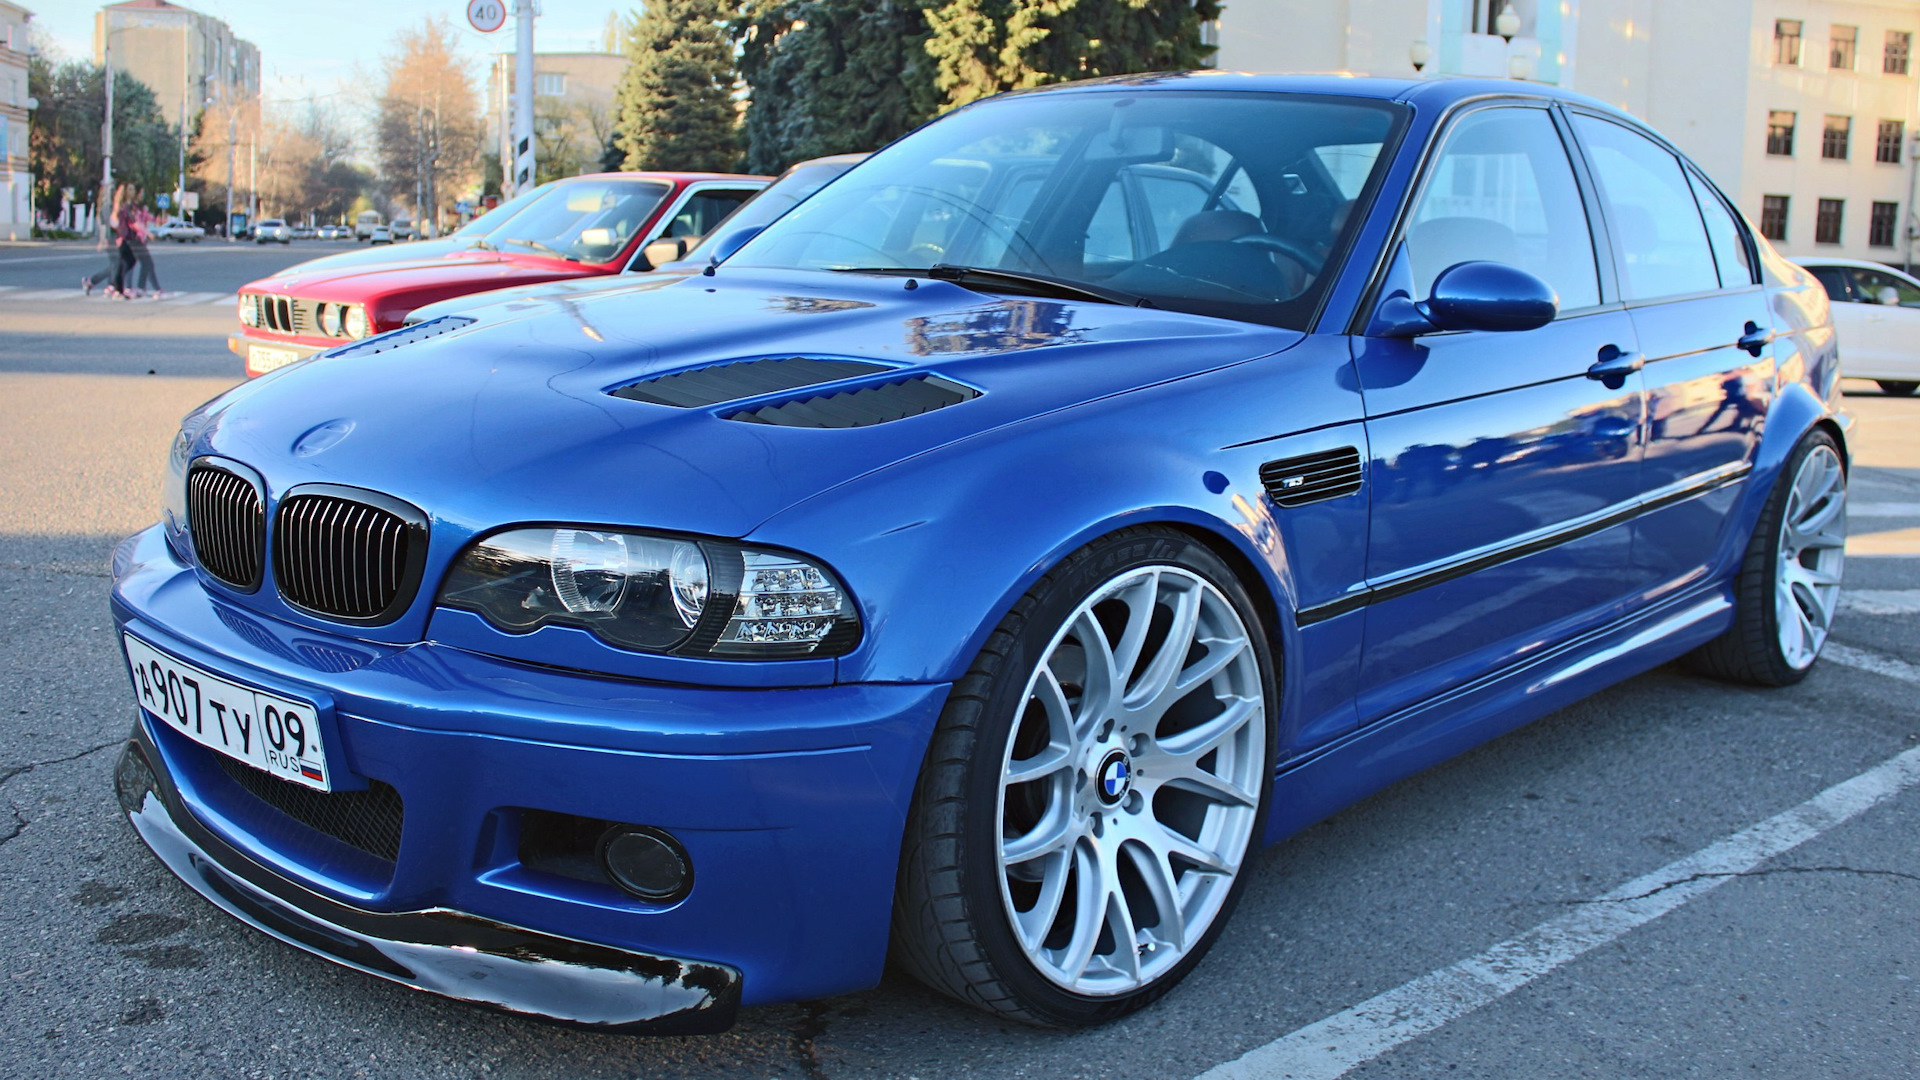 Е46 бу. БМВ м3 е46 седан. BMW e46 Coupe. БМВ е46 седан синяя. BMW m3 e46 sedan.